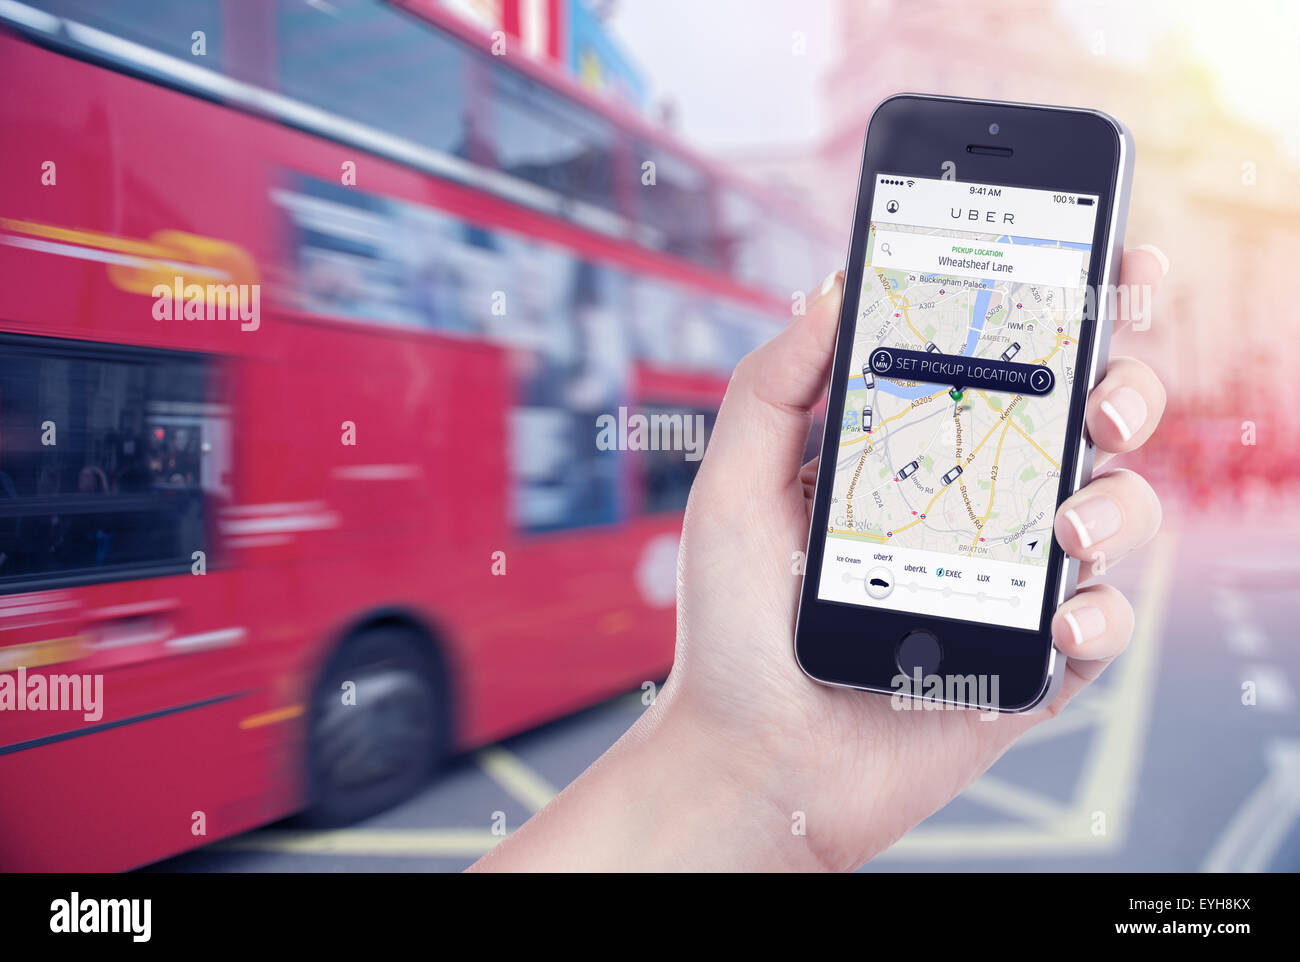 Varna, Bulgarien – 26. Mai 2015: Mietwagensuche von Uber-app, die auf dem Apple iPhone angezeigt wird. Straßenansicht im Hintergrund unscharf. Stockfoto